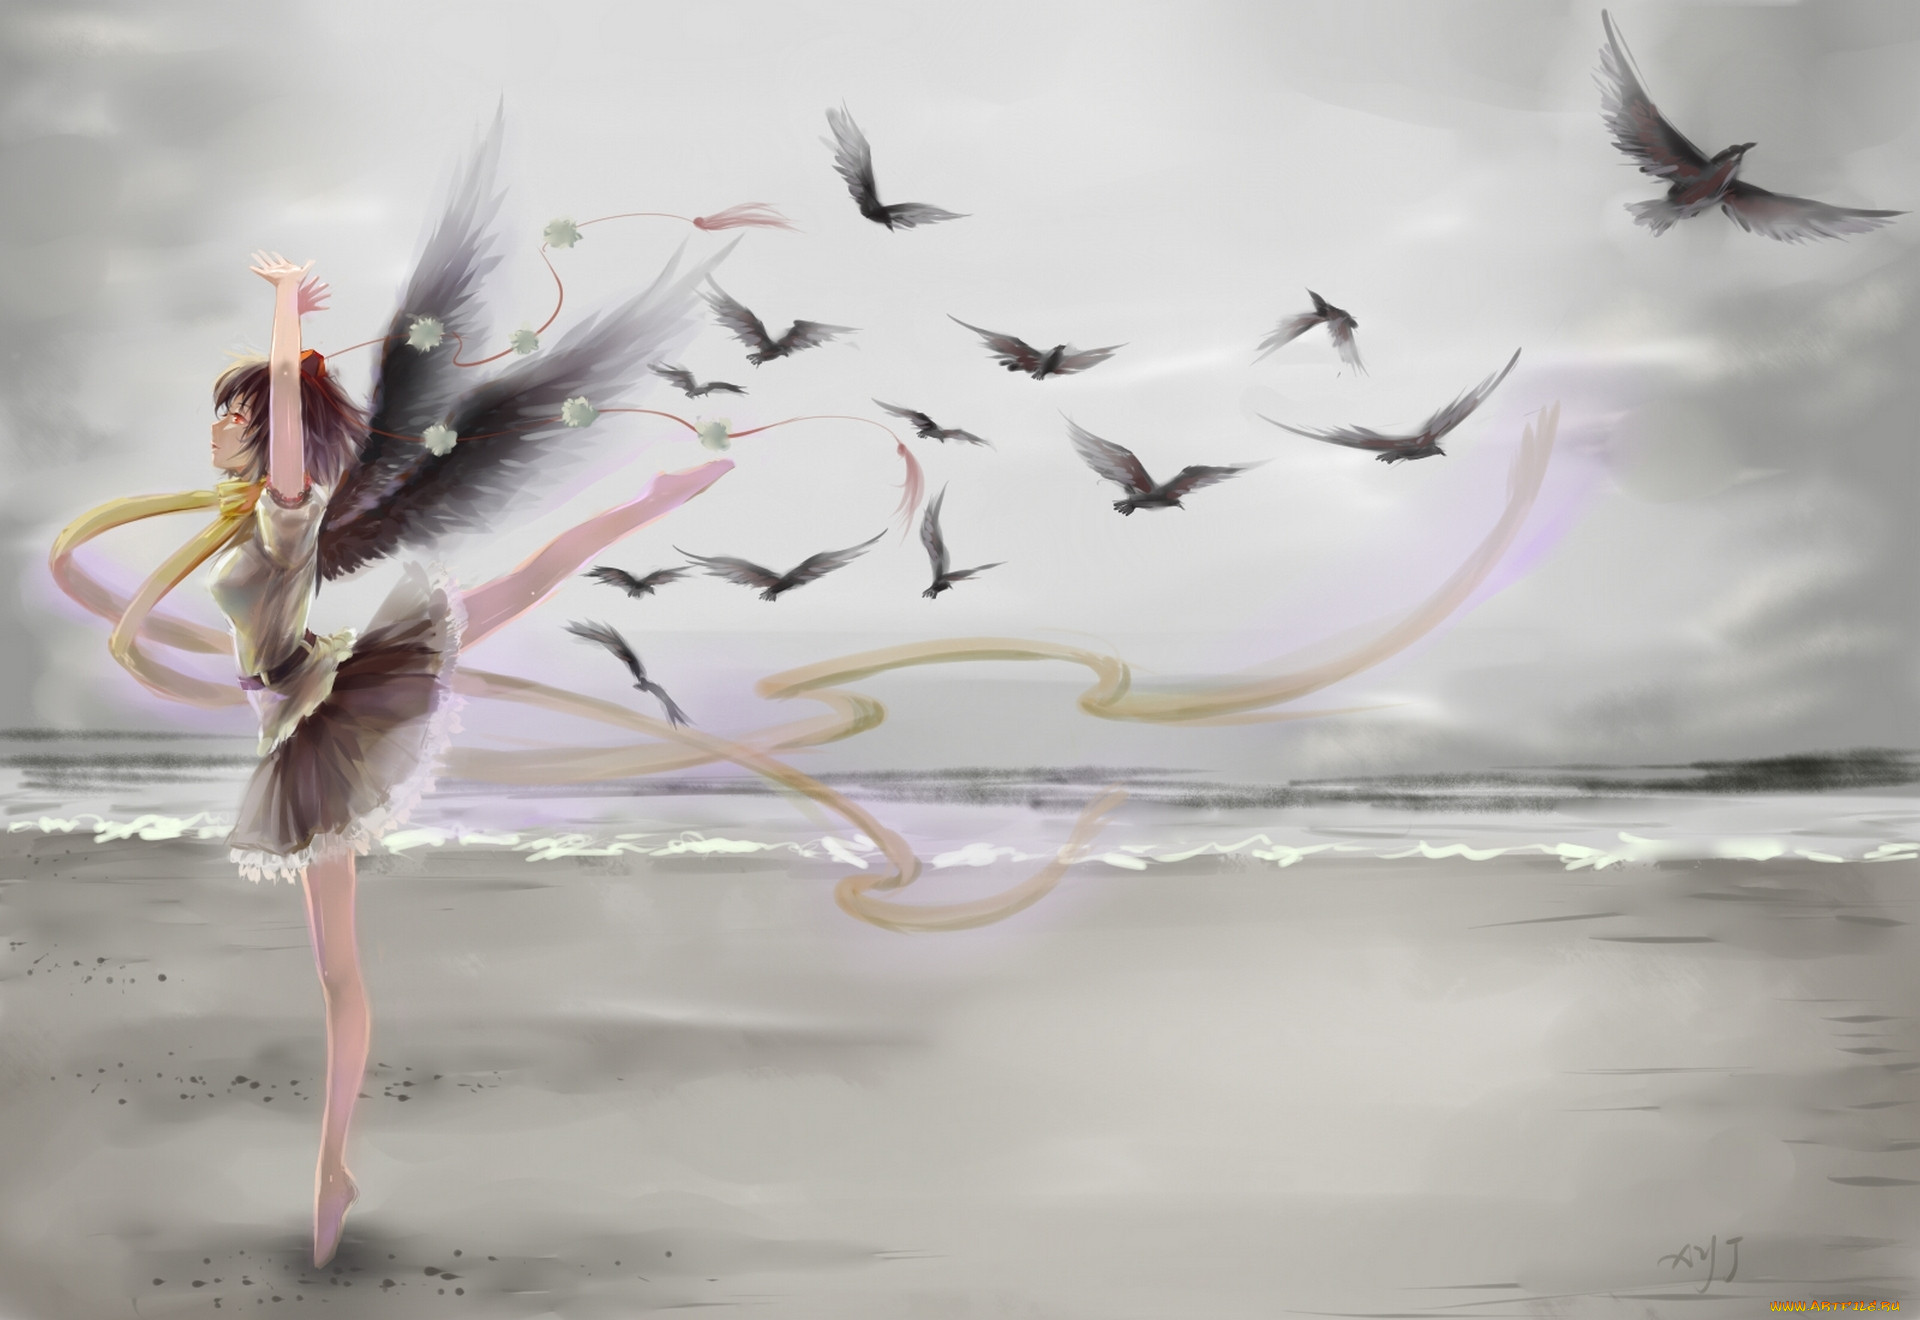 Позволяй душе летать. Девушка птица. Девушка с птичкой. Картина девушка с крыльями. Девушка и летящие птицы арт.